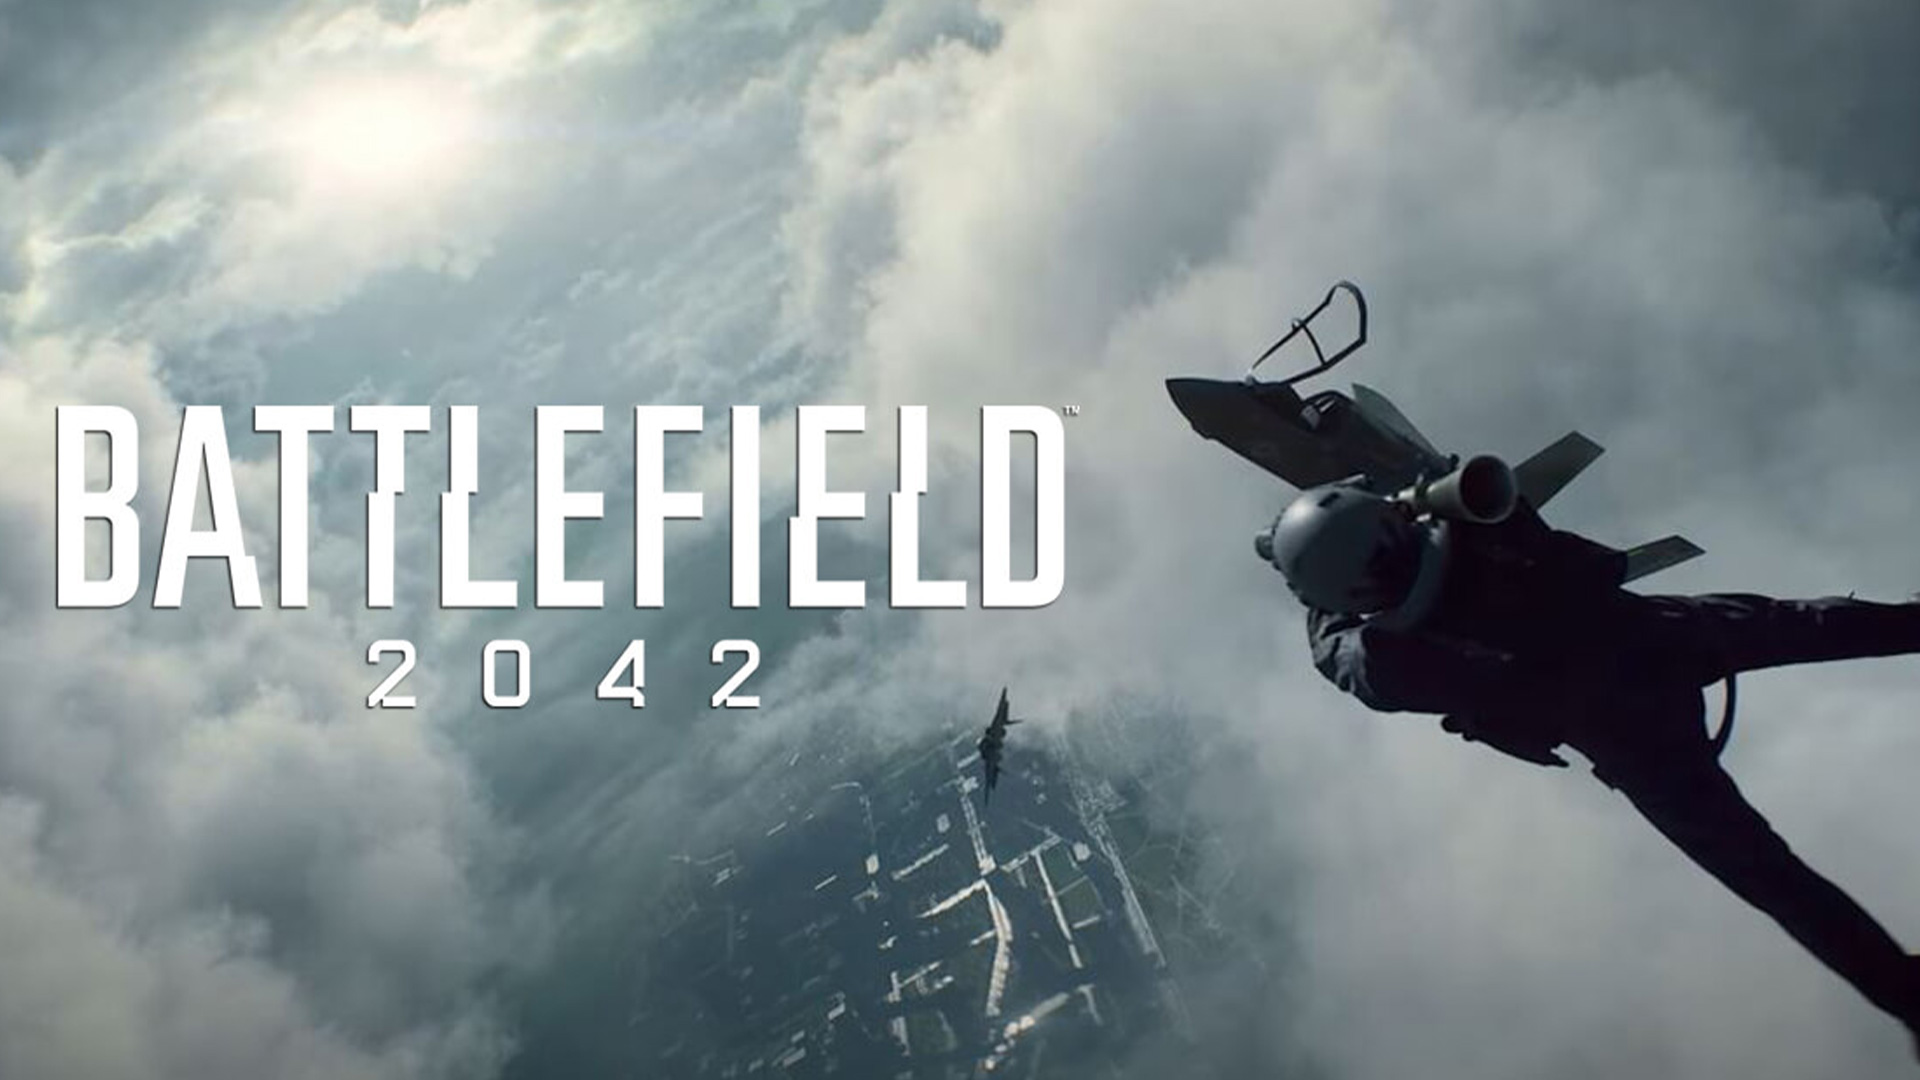 شایعه: محتویات سیزن پس رایگان بازی Battlefield 2042 مشخص شد